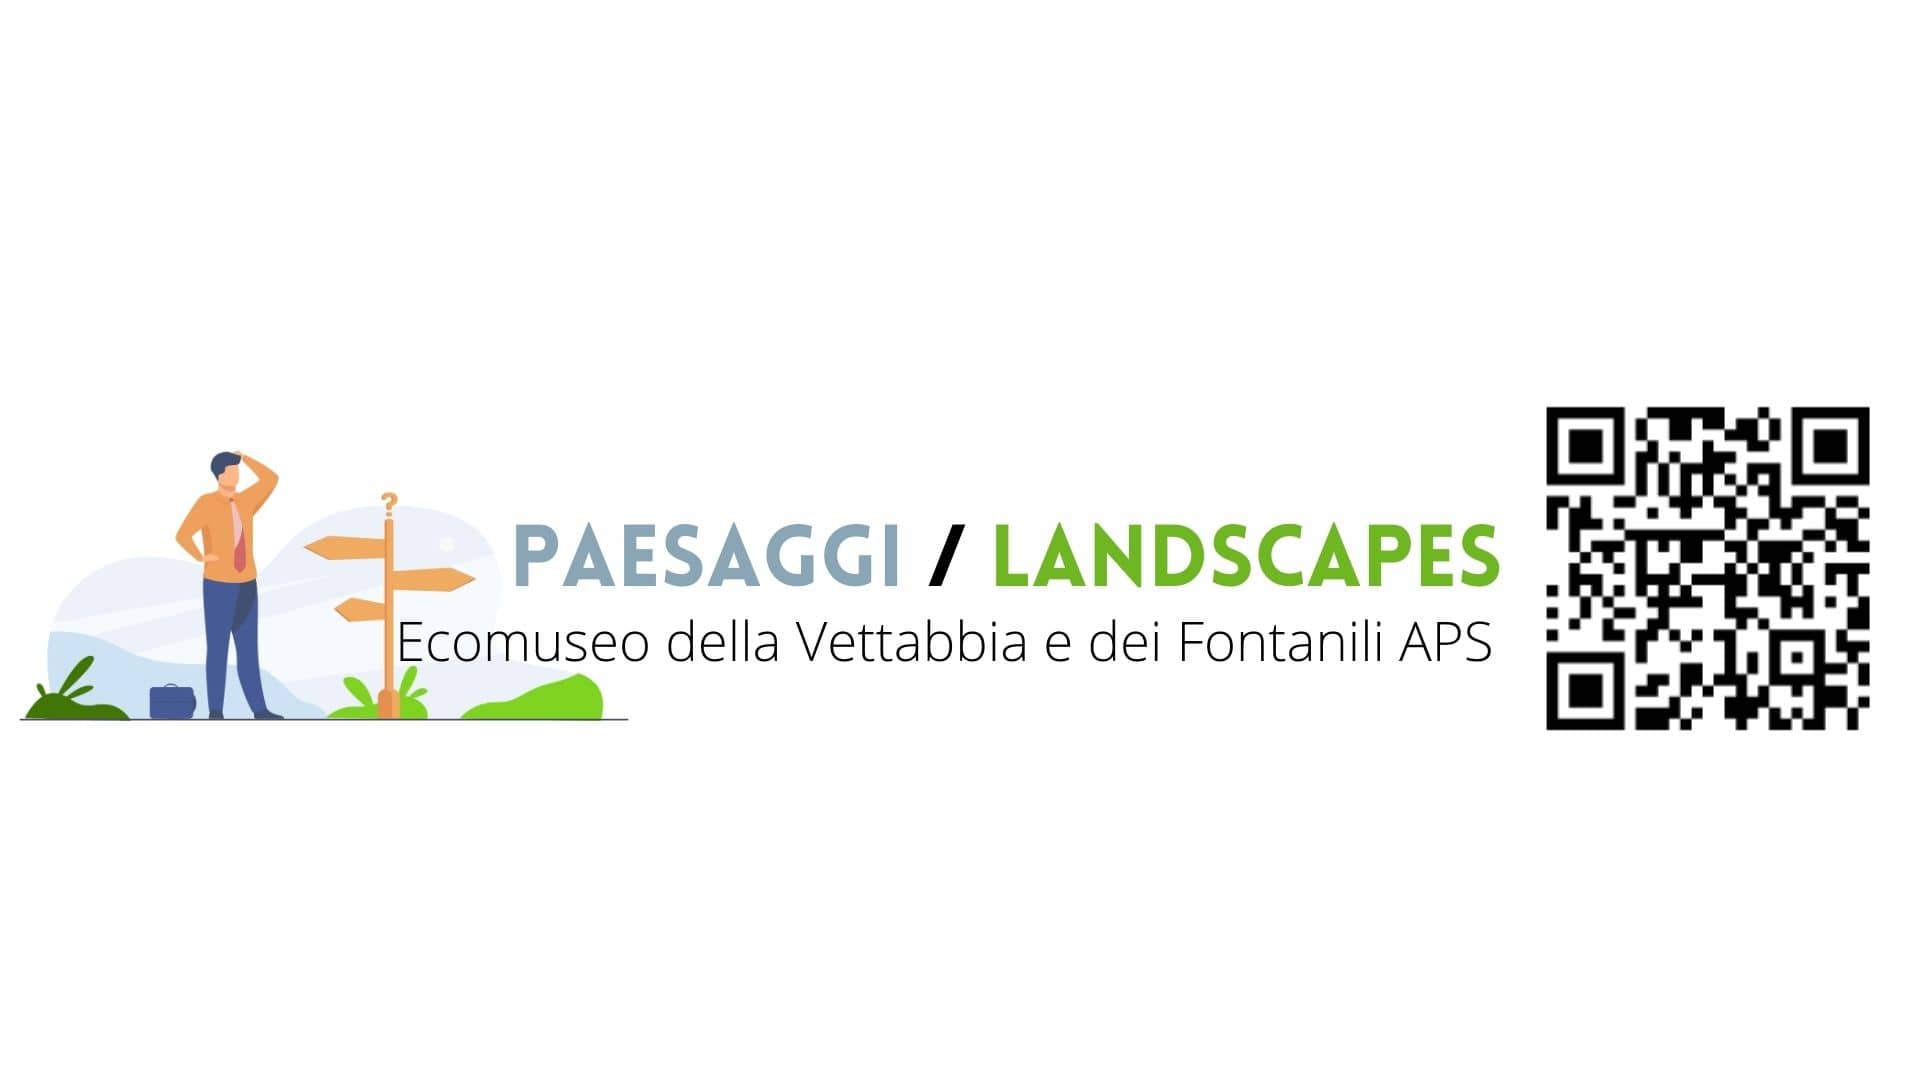 Paesaggi Landscapes - Ecomuseo della Vettabbia e dei Fontanili APS